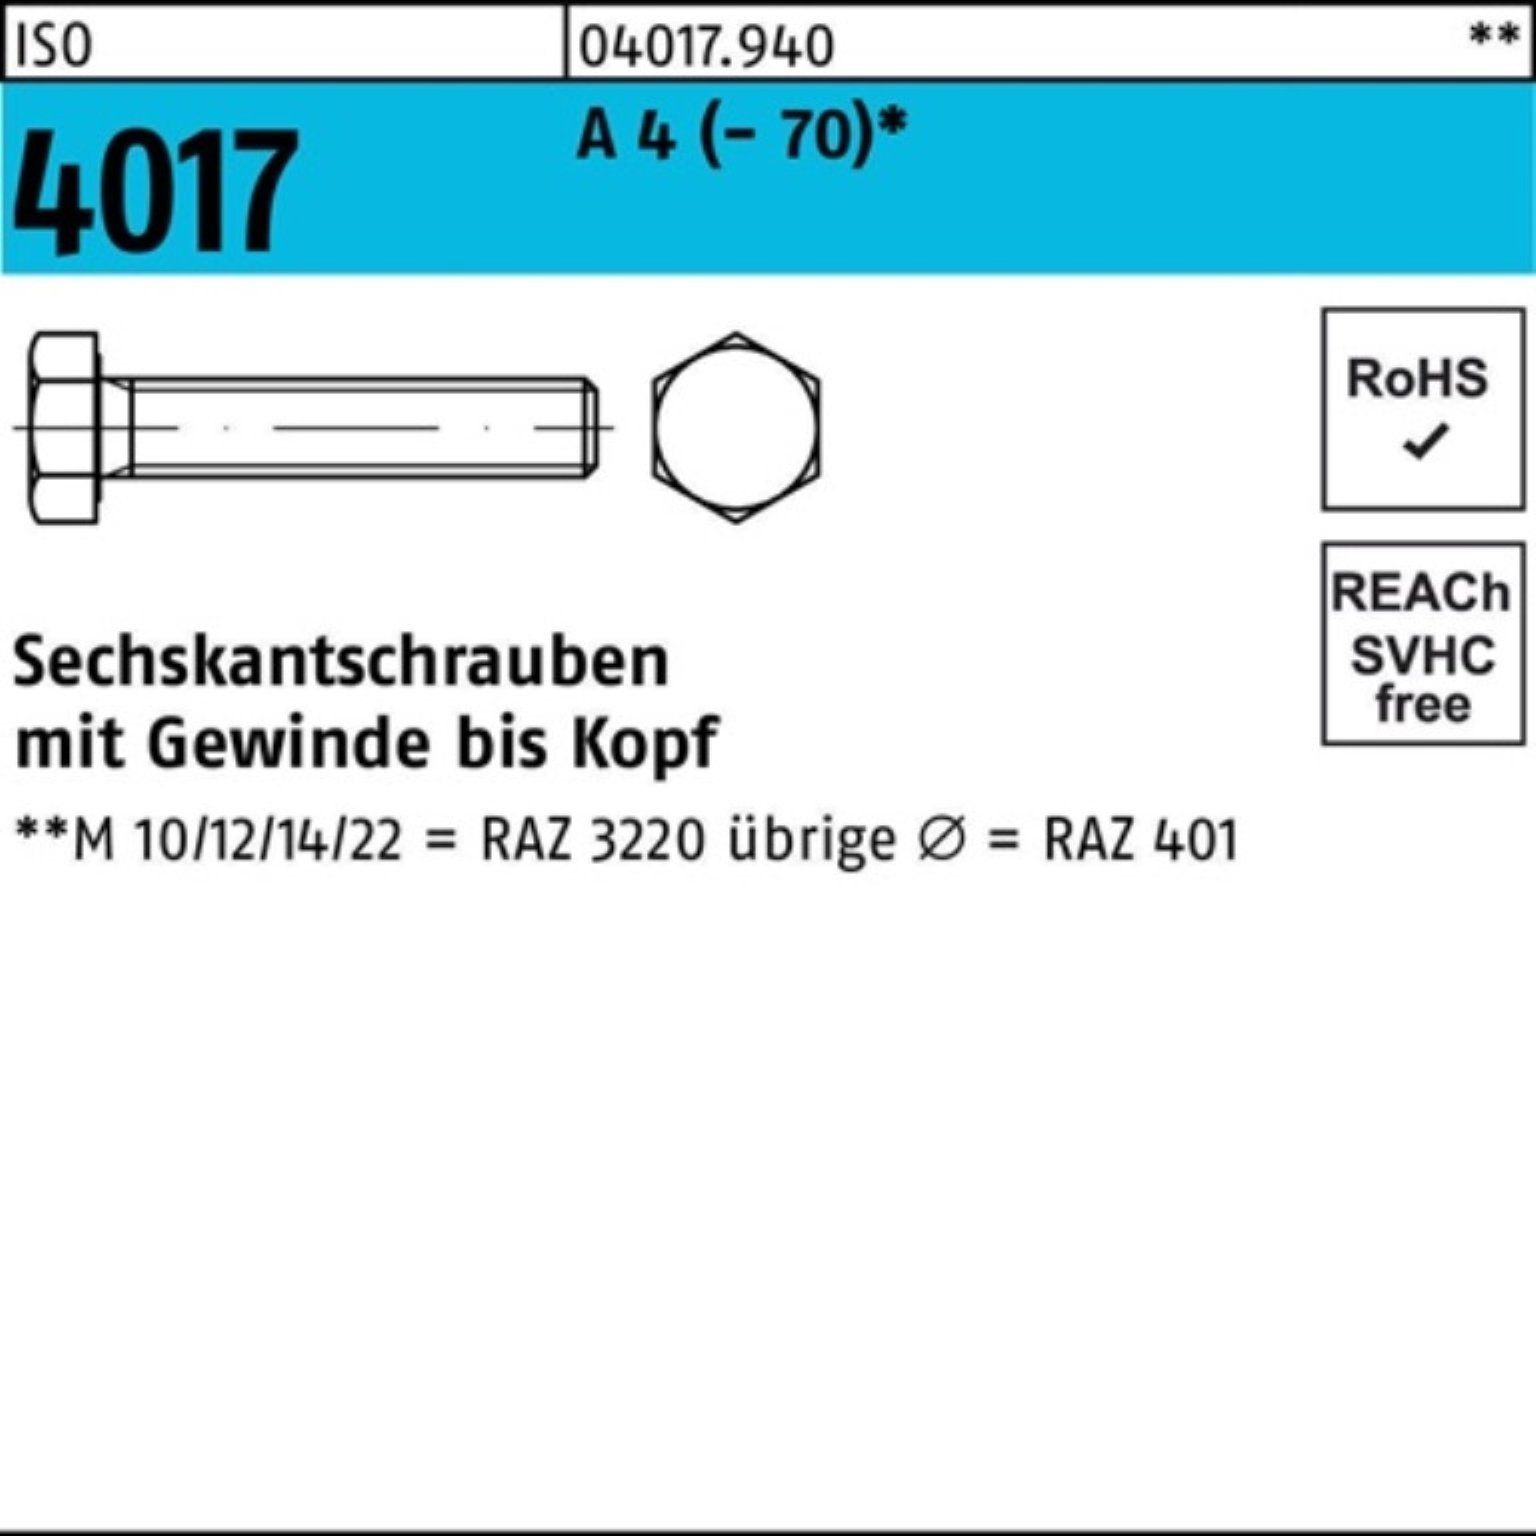 M18x I Stück Bufab Sechskantschraube 90 Sechskantschraube A 1 (70) 4 Pack 4017 ISO VG 100er